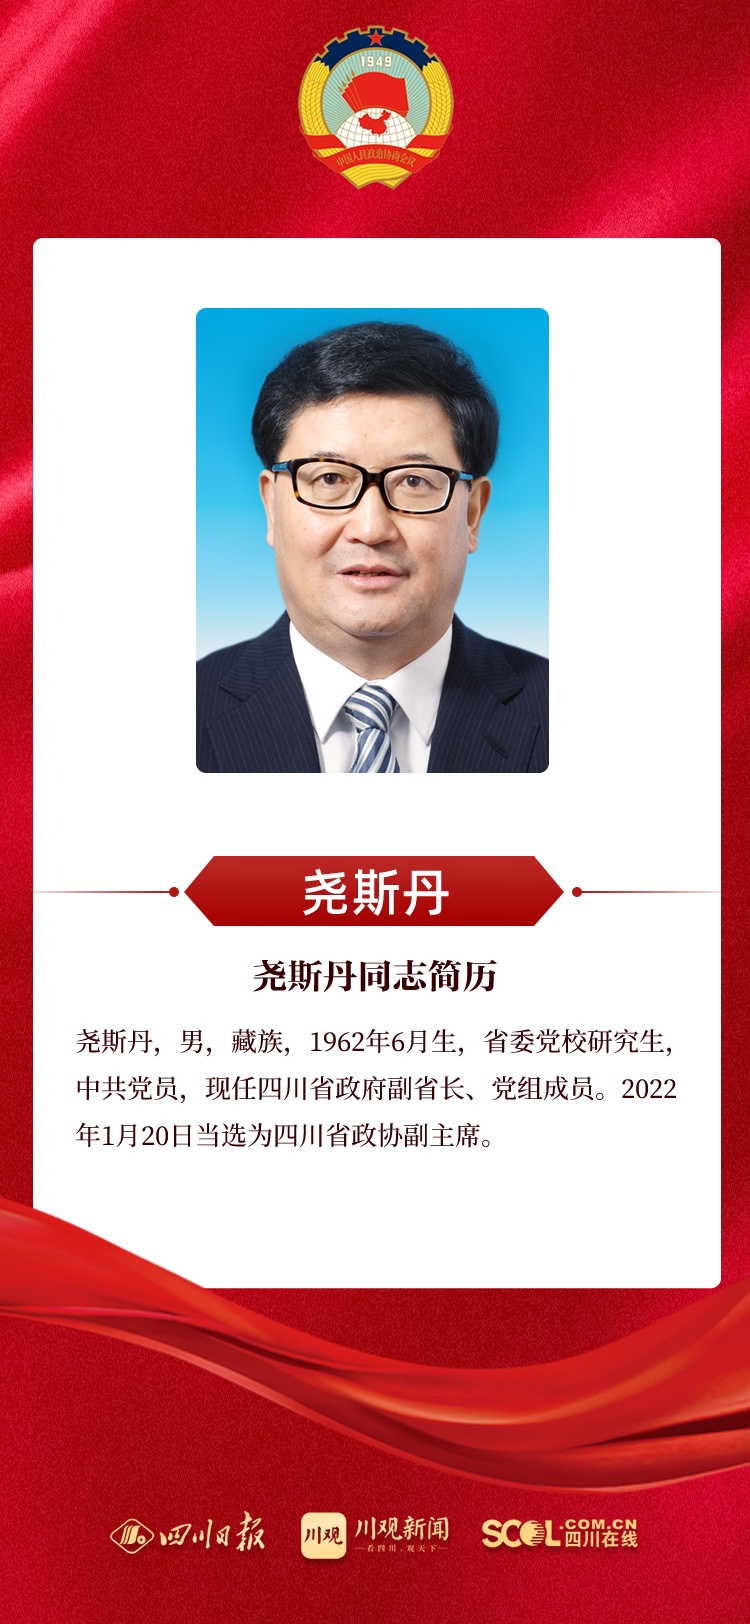 新当选的政协四川省第十二届委员会主席、副主席、常委名单